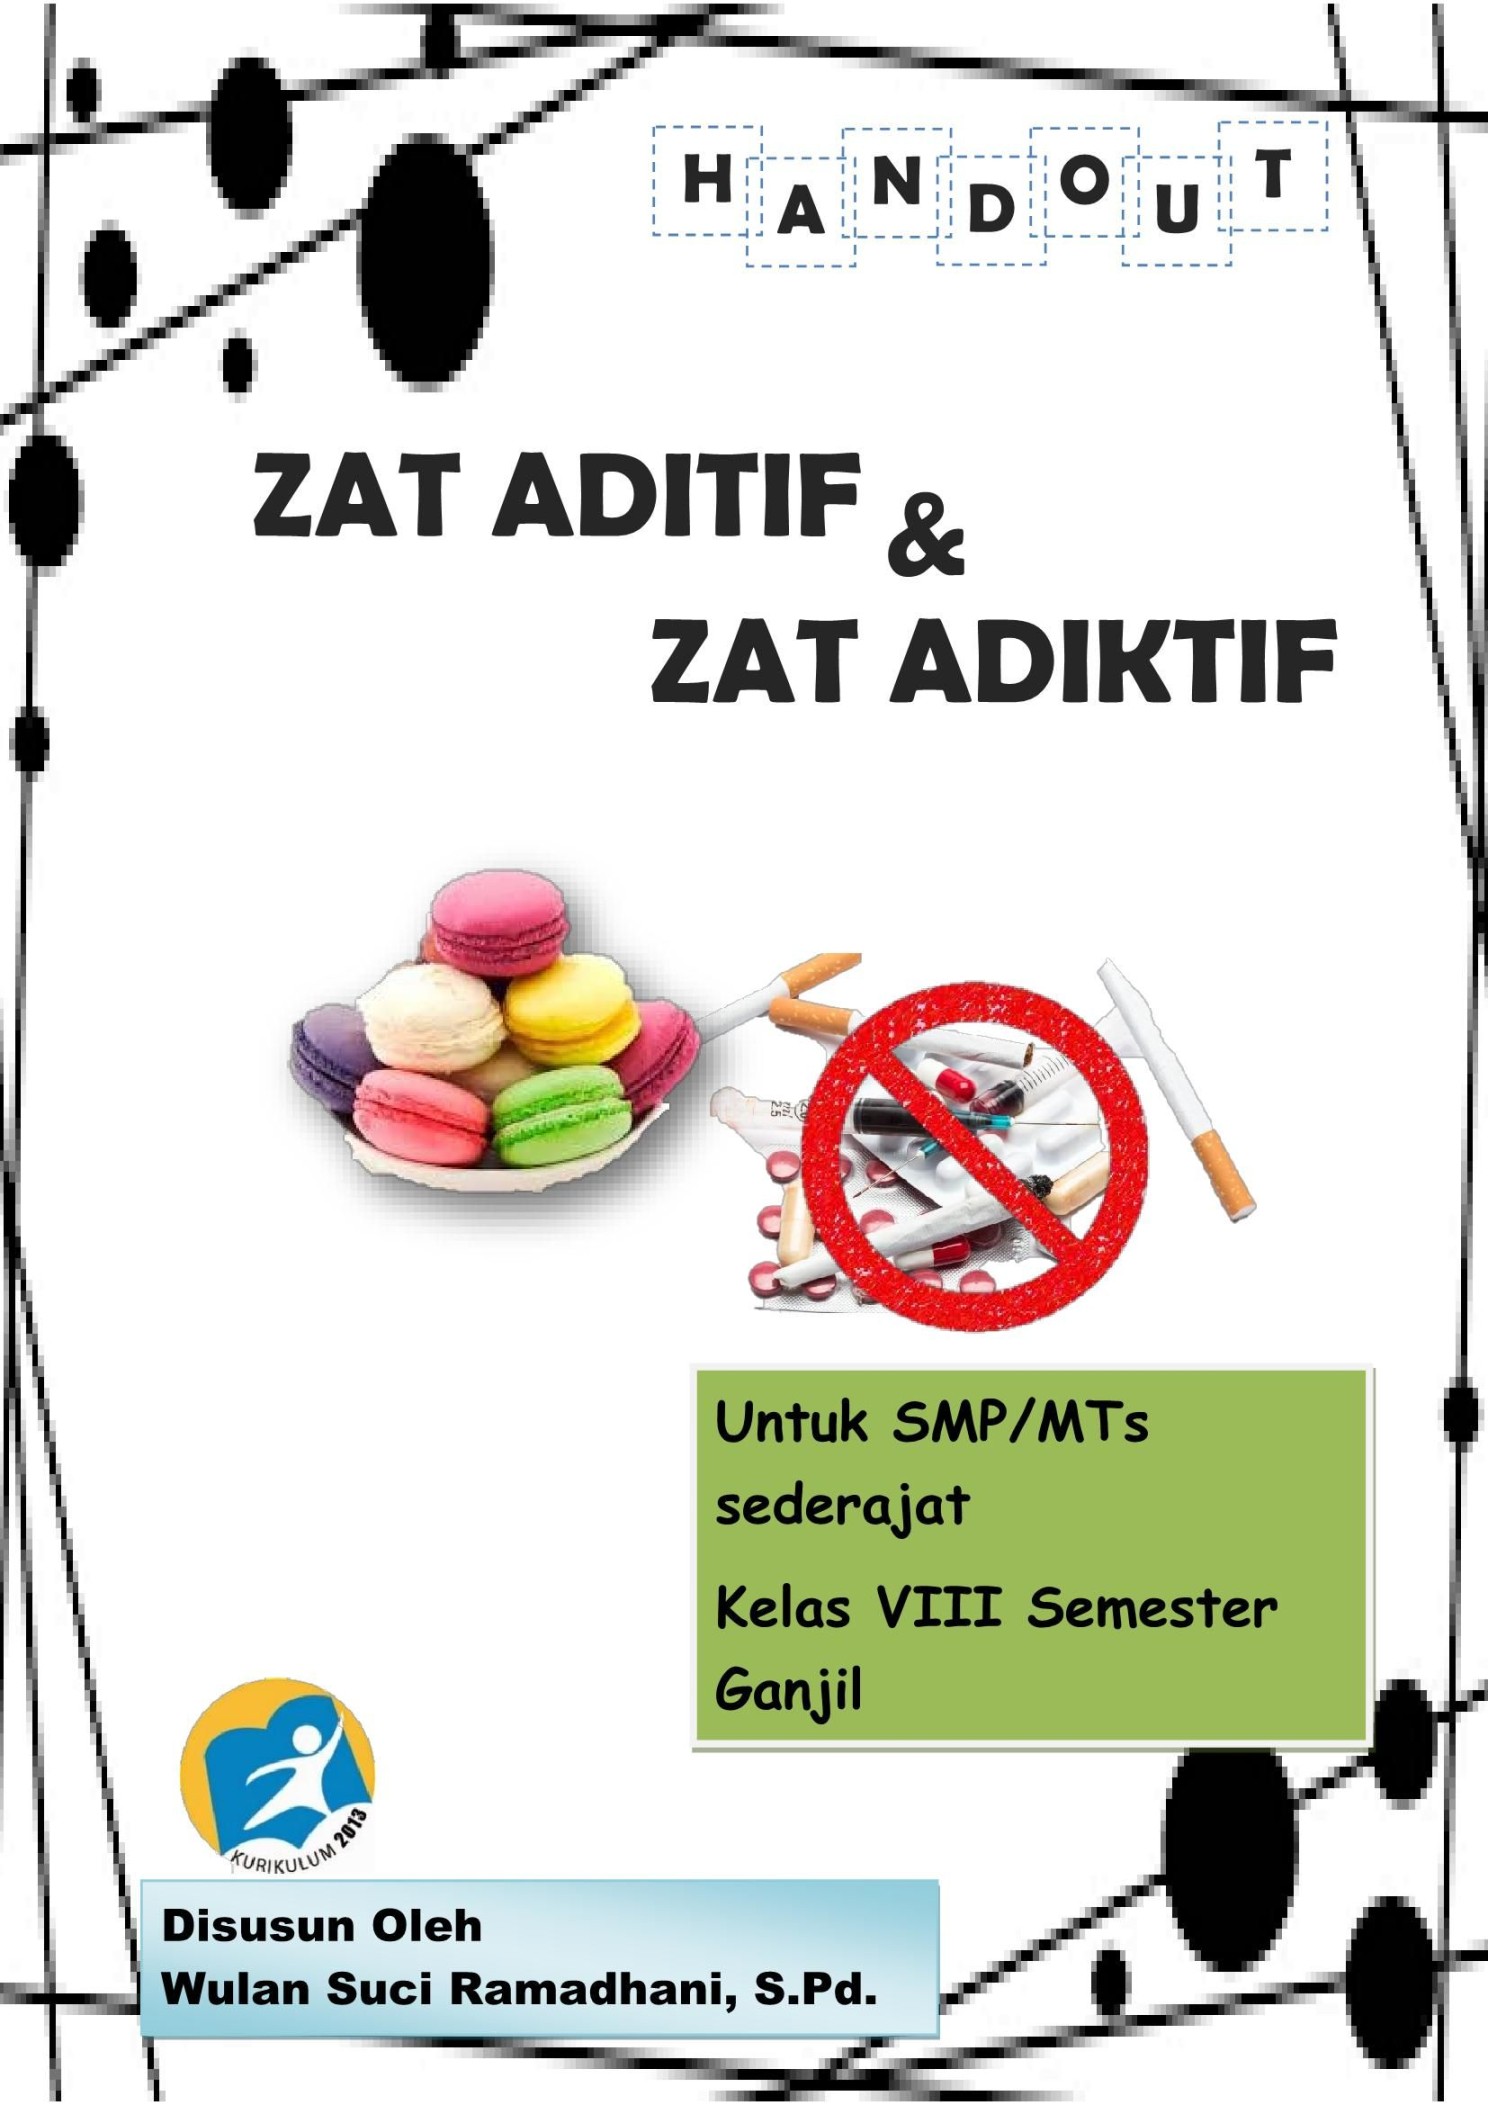 poster tentang zat aditif